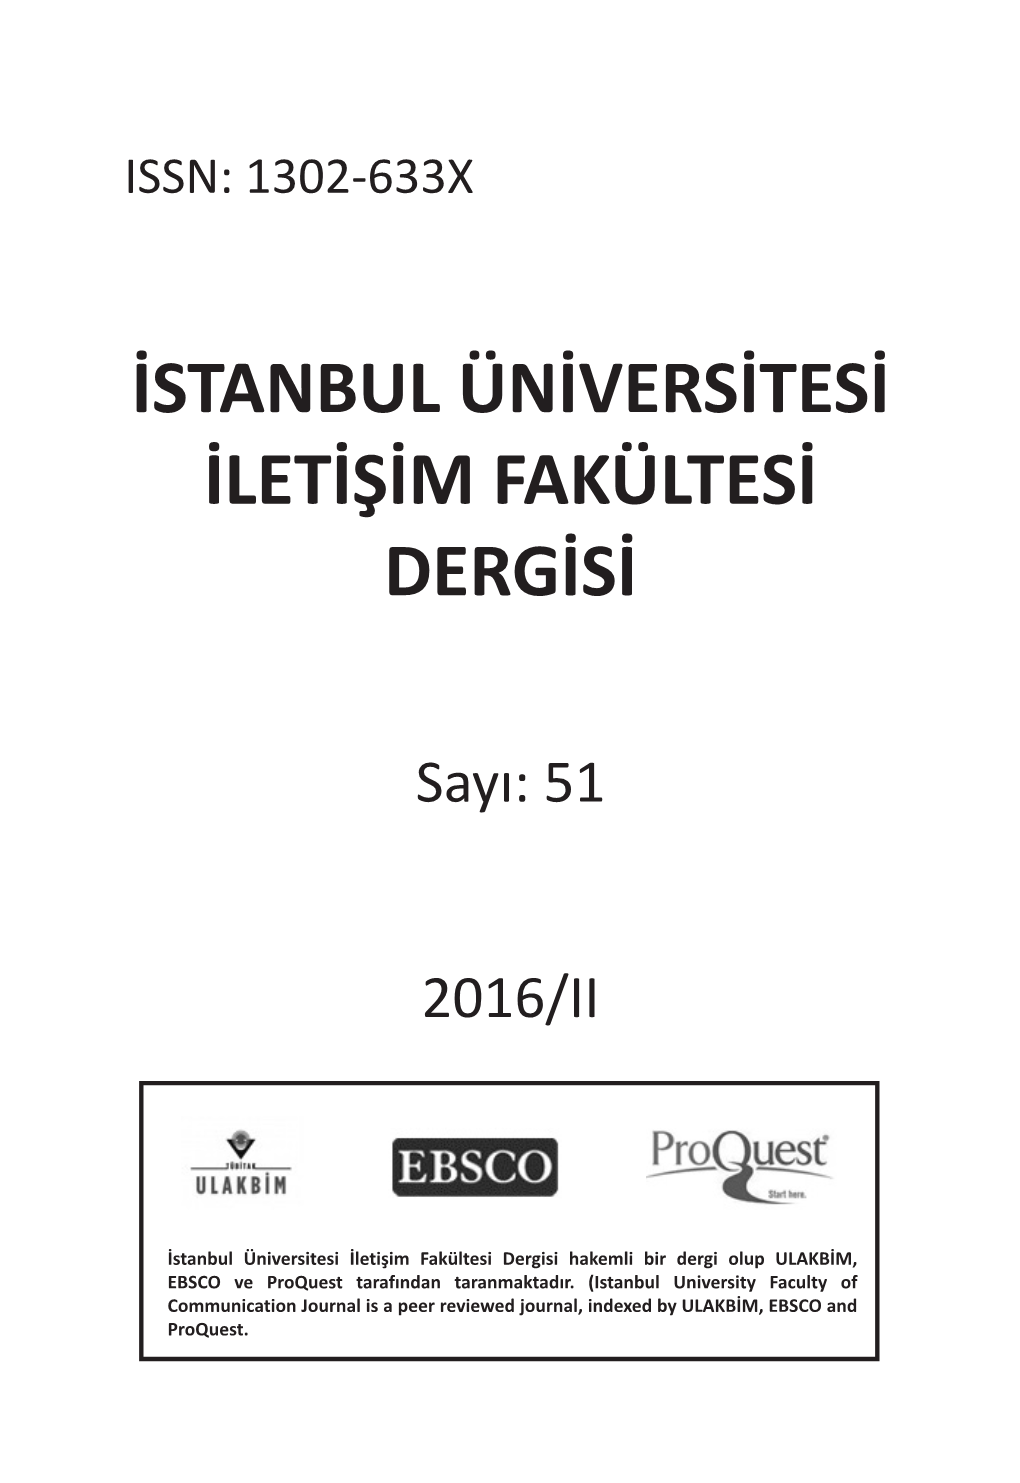 Istanbul Üniversitesi Iletişim Fakültesi Dergisi